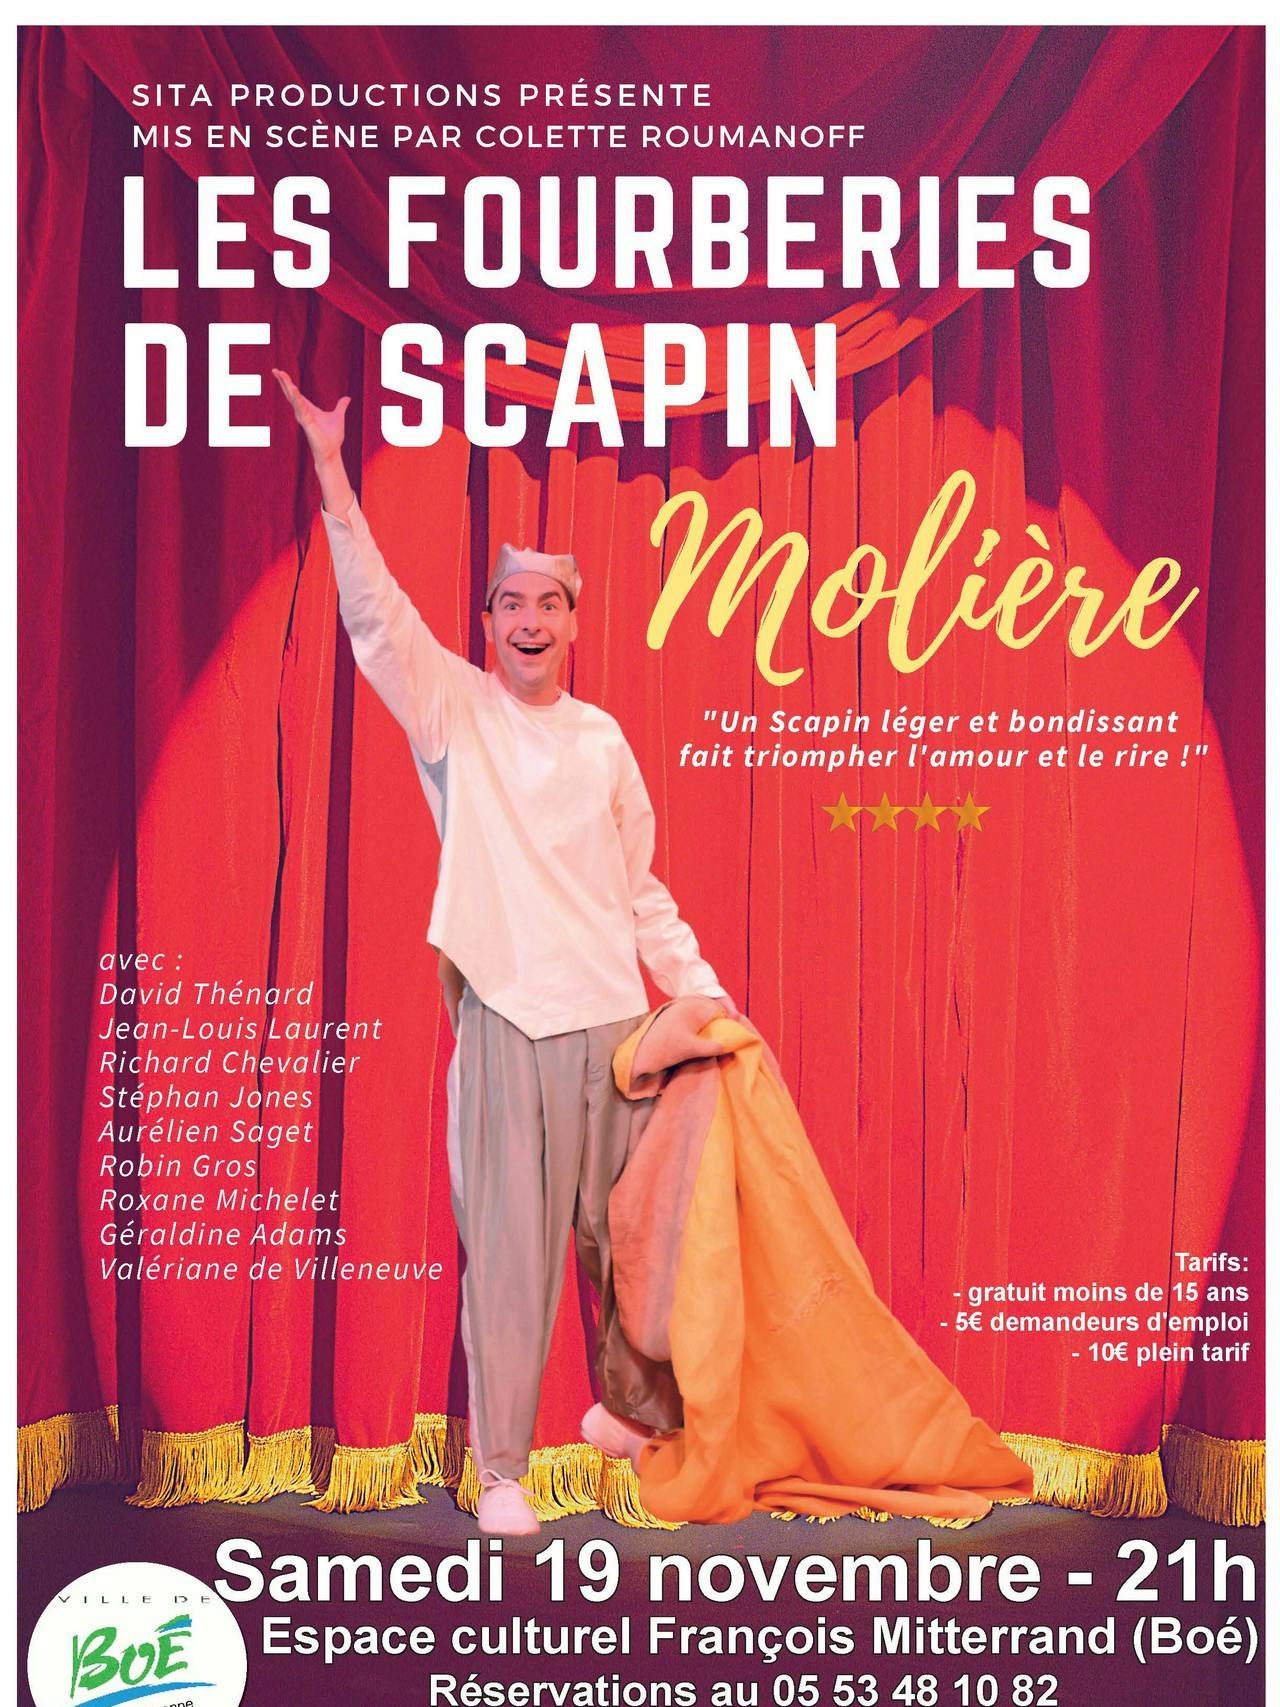 Les Fourberies de Scapin à l'Espace Culturel François Mitterrand le samedi 19 novembre 2022 